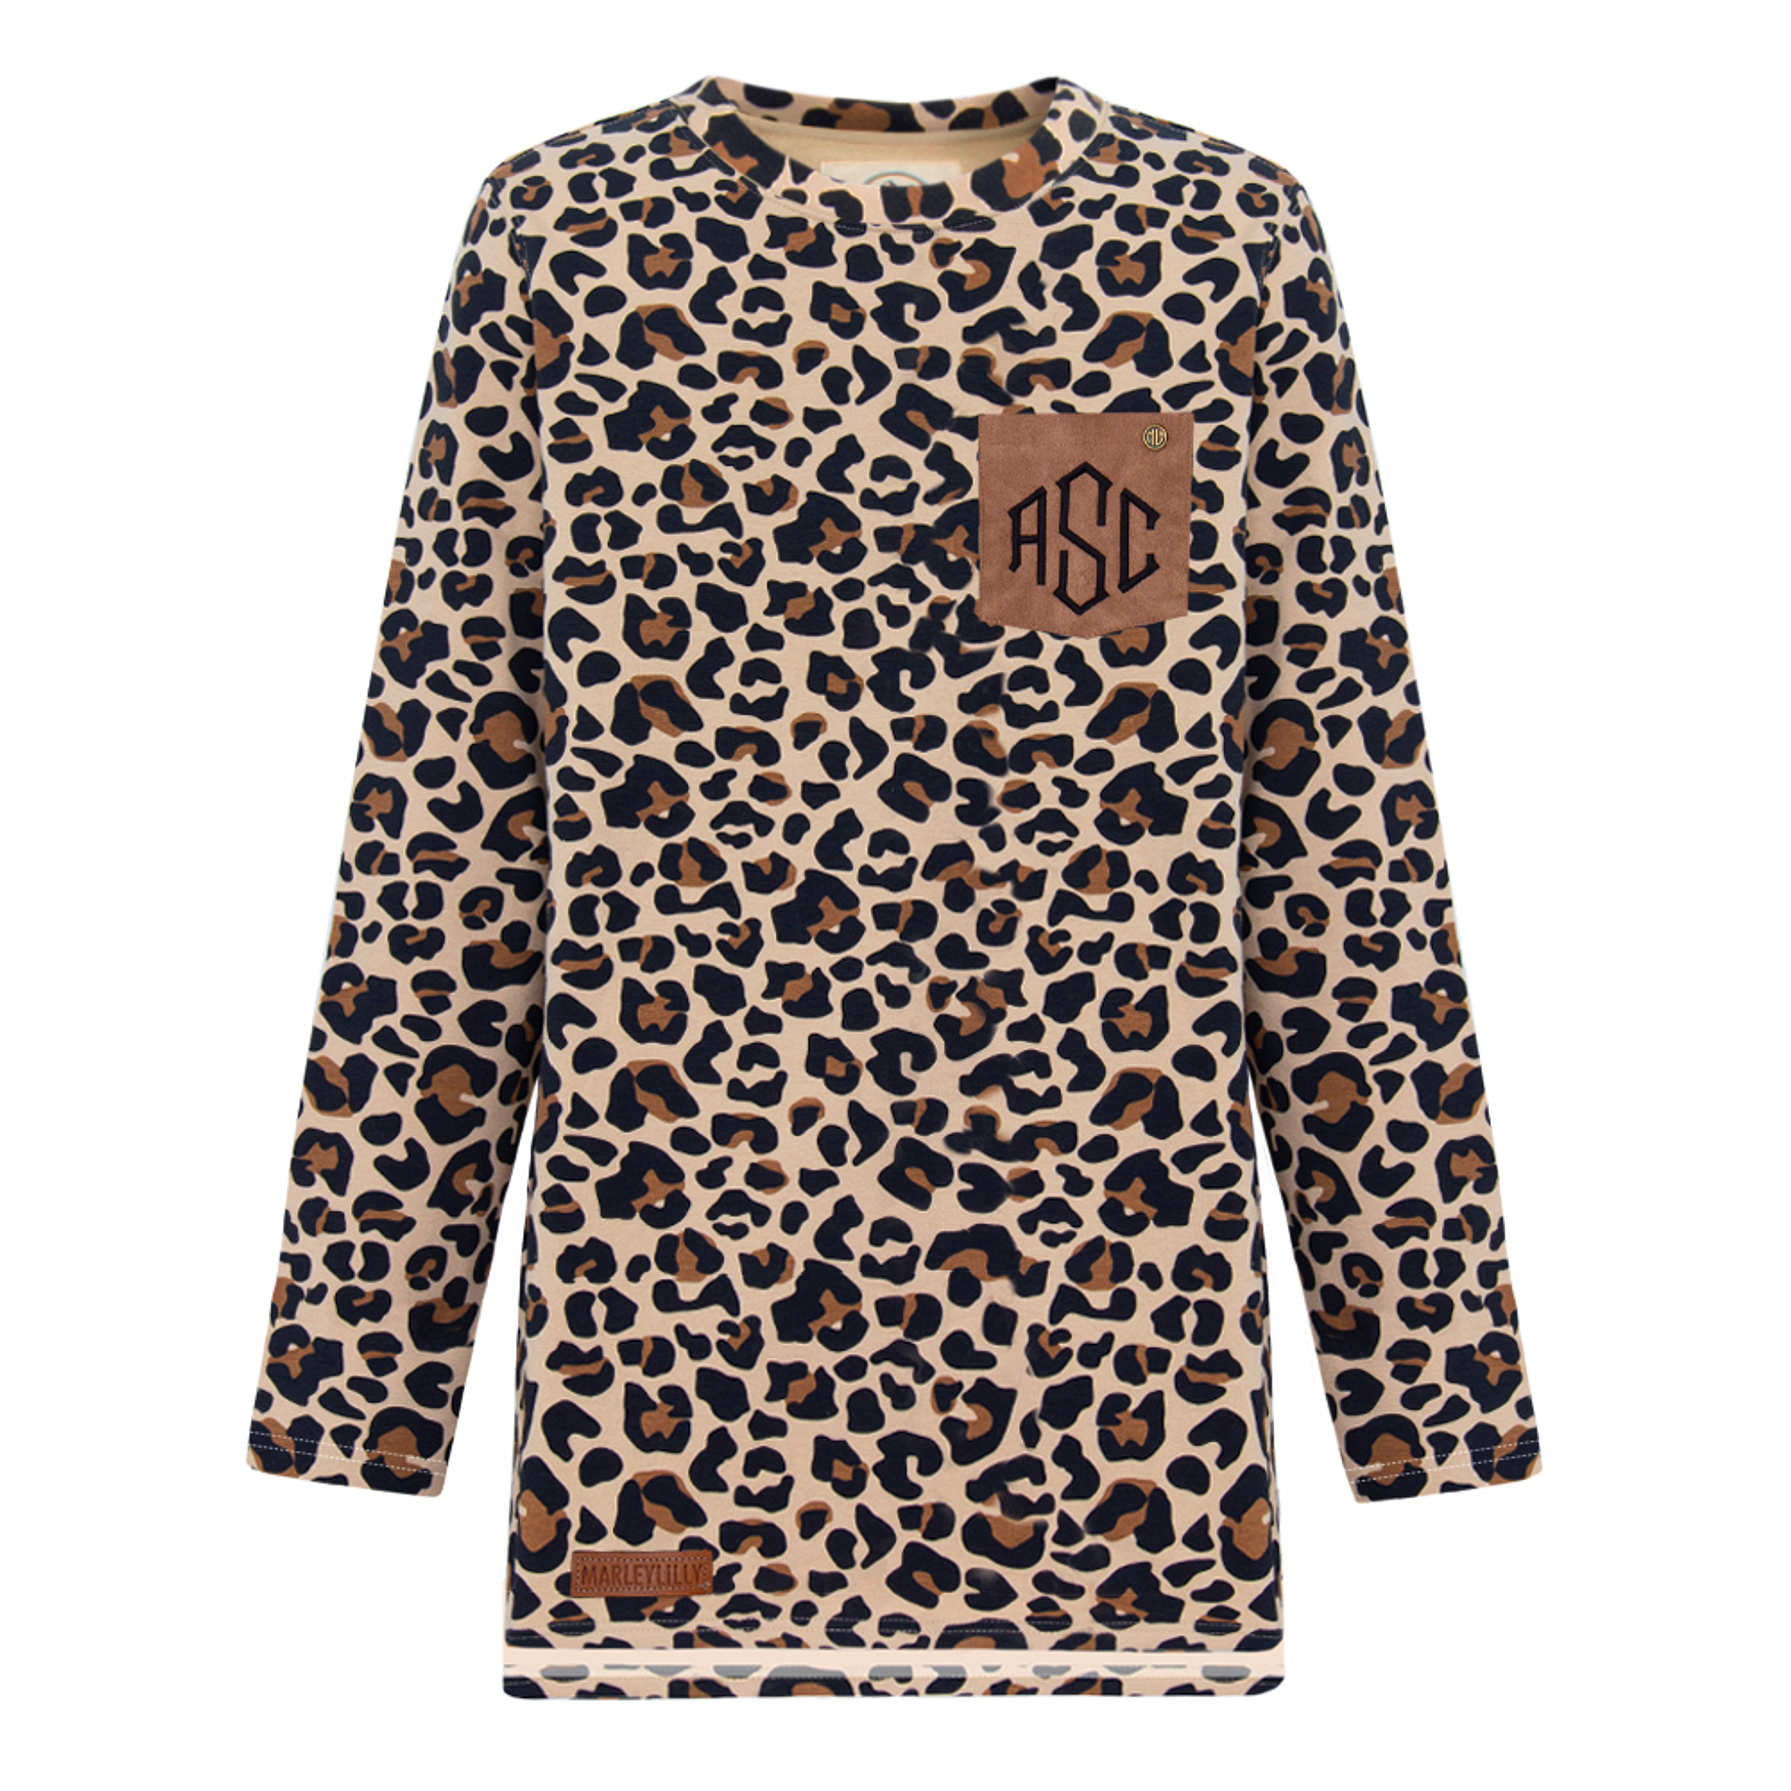 Women's Personalized Leopard Sweatshirt - Marleylilly